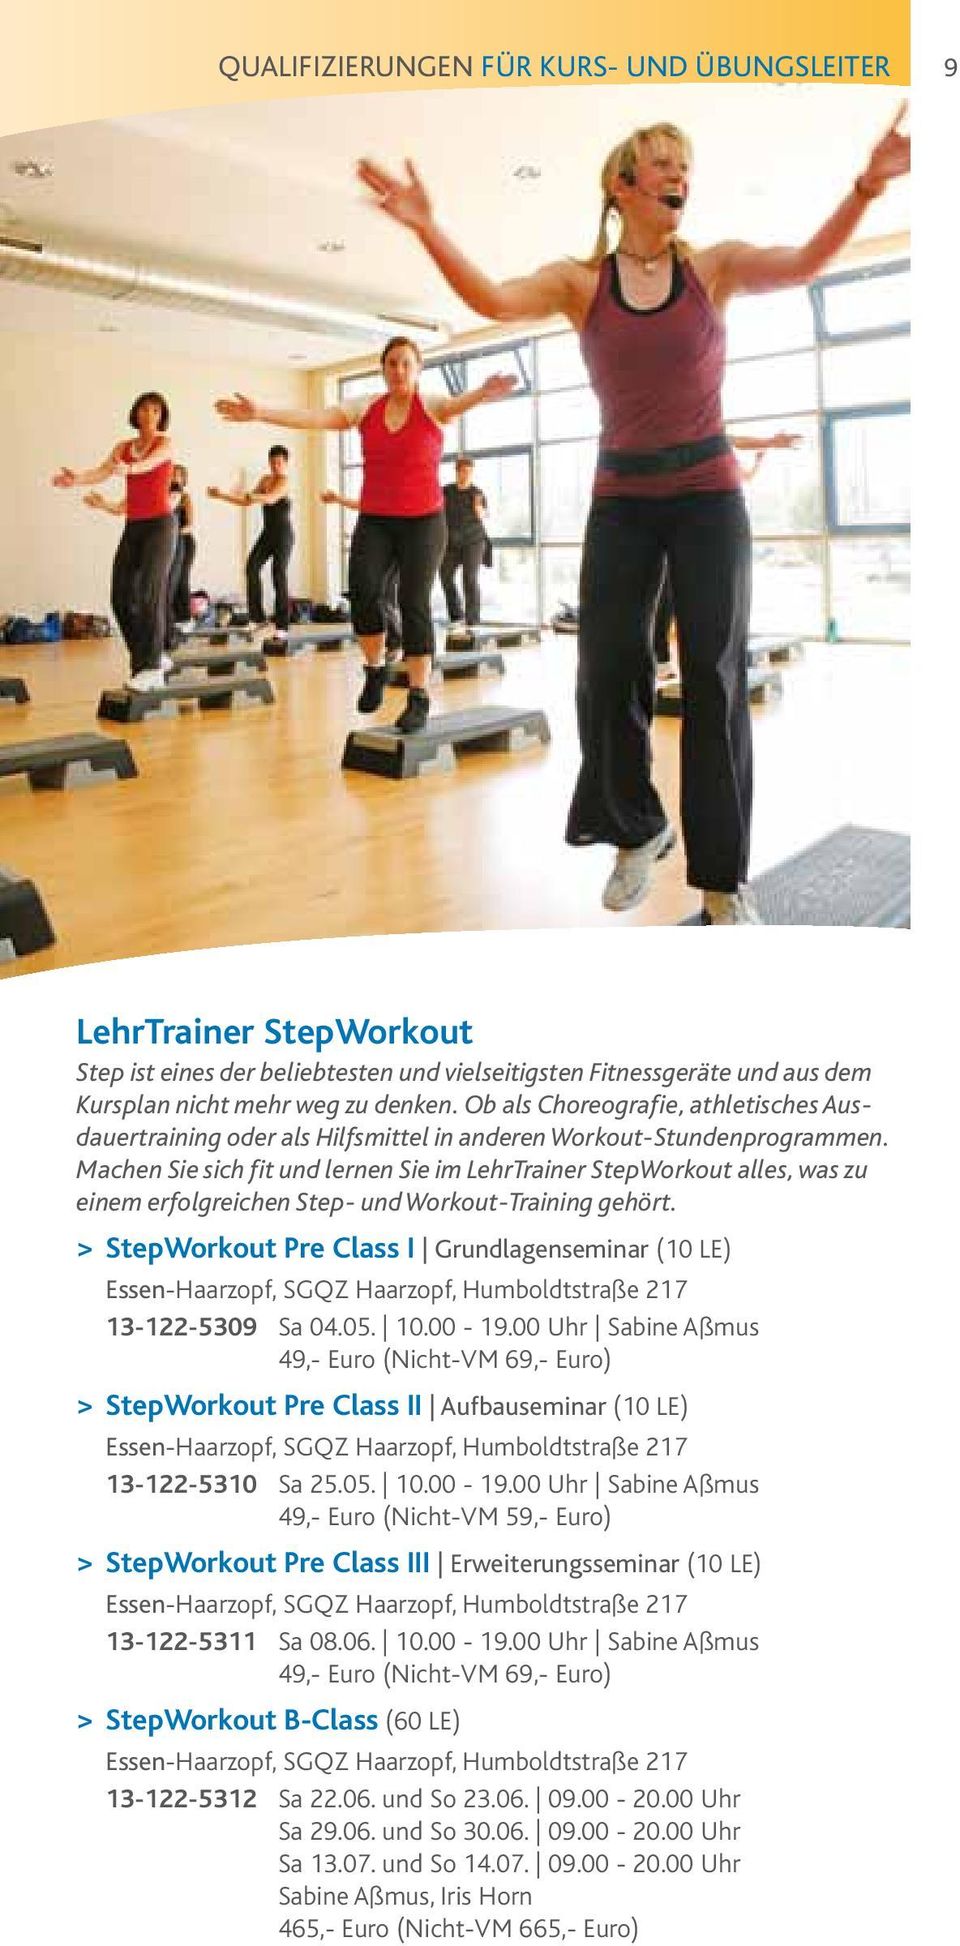 Machen Sie sich fit und lernen Sie im LehrTrainer StepWorkout alles, was zu einem erfolgreichen Step- und Workout-Training gehört.